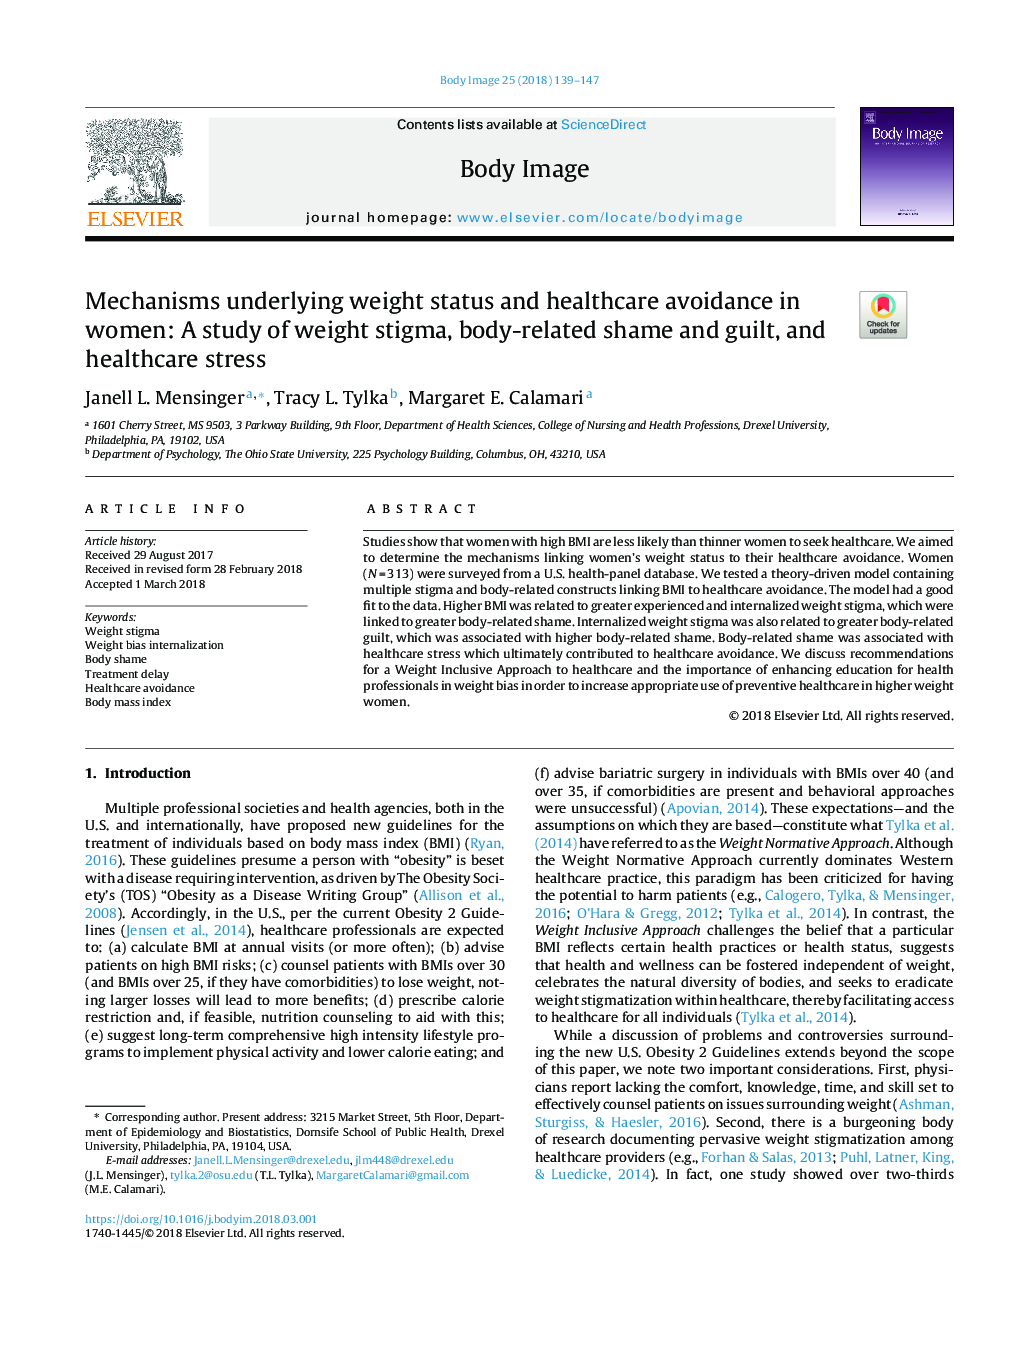 مکانیسم های موجود در زمینه وزن و اجتناب از مراقبت های بهداشتی در زنان: مطالعه ای درباره کاهش وزن، شرم و گناه مرتبط با بدن و استرس مراقبت های بهداشتی 